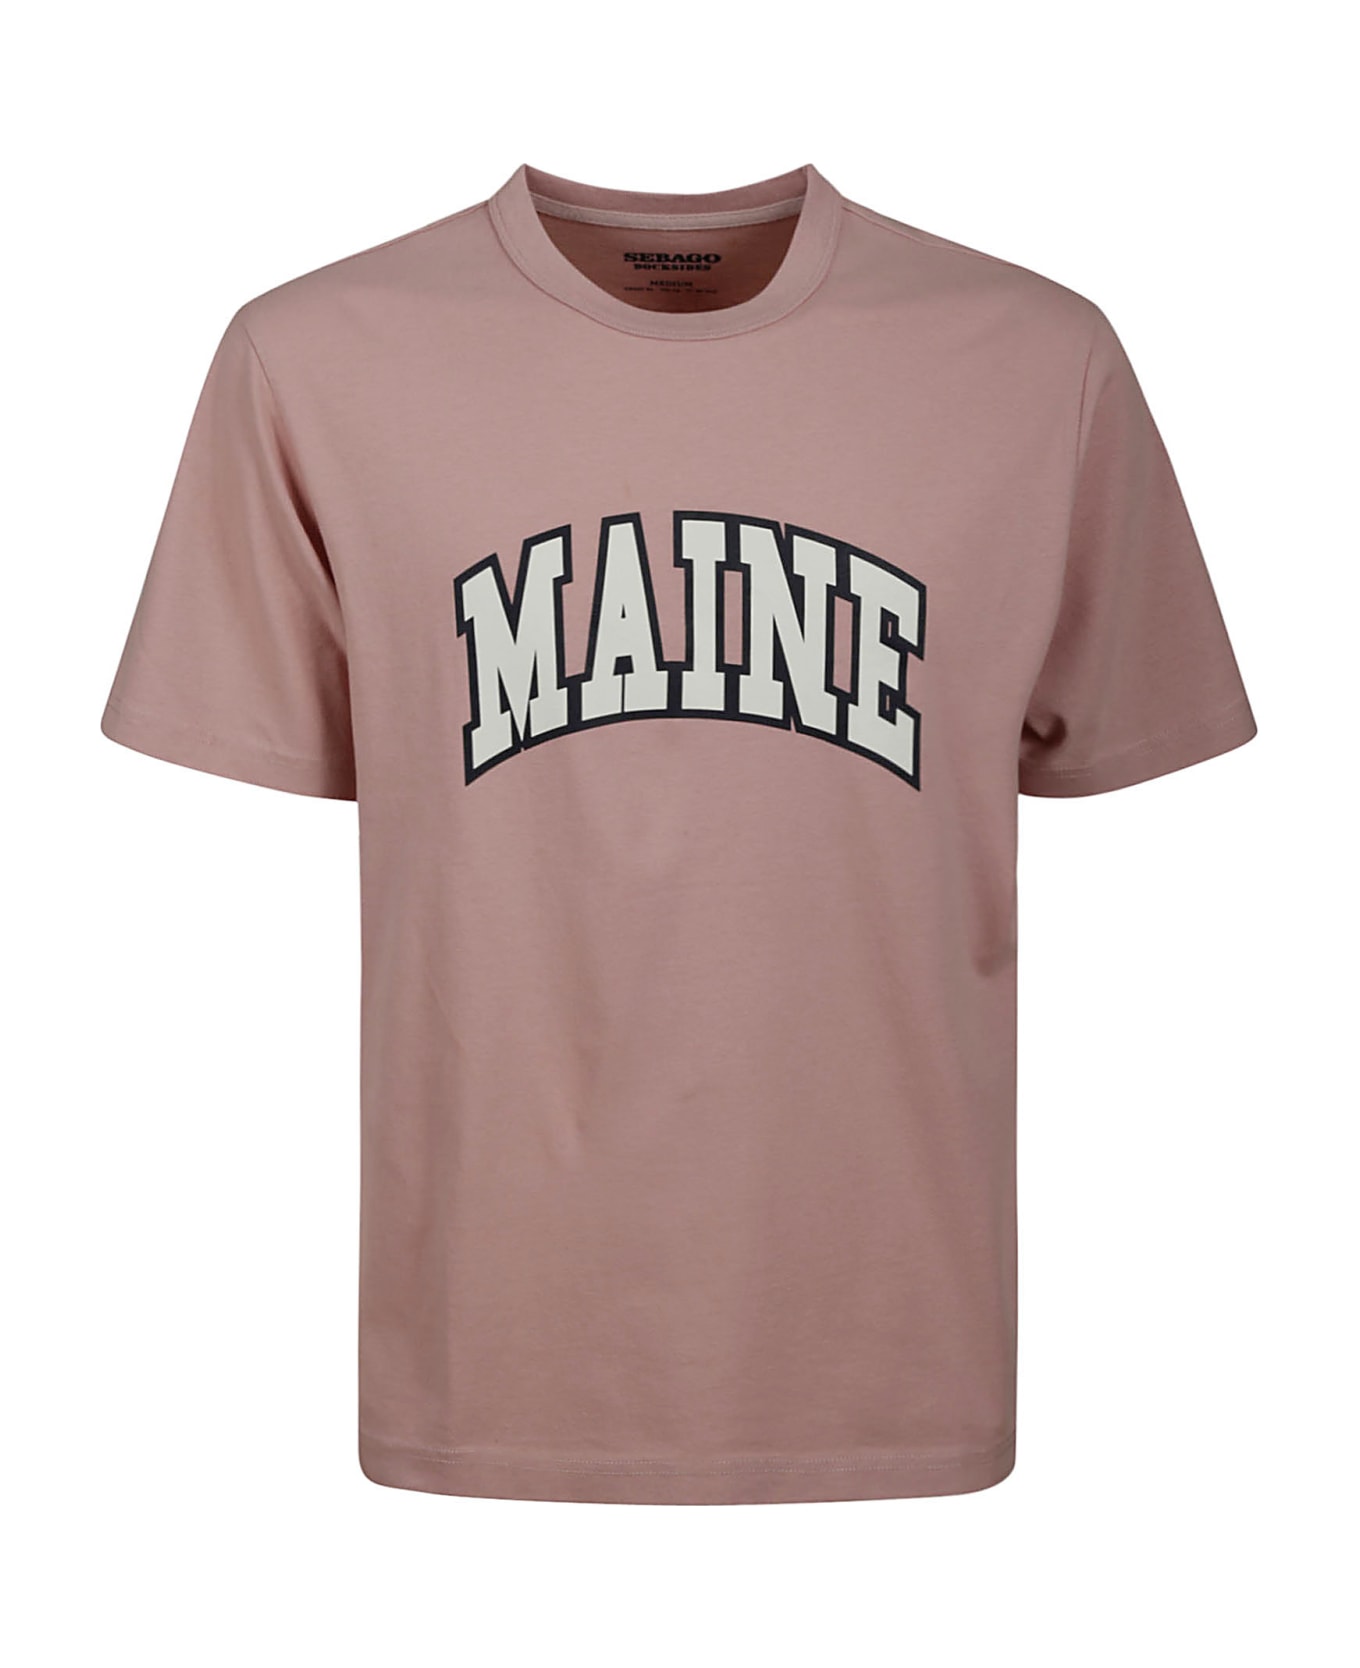 Sebago Danforth - A Pink Maine